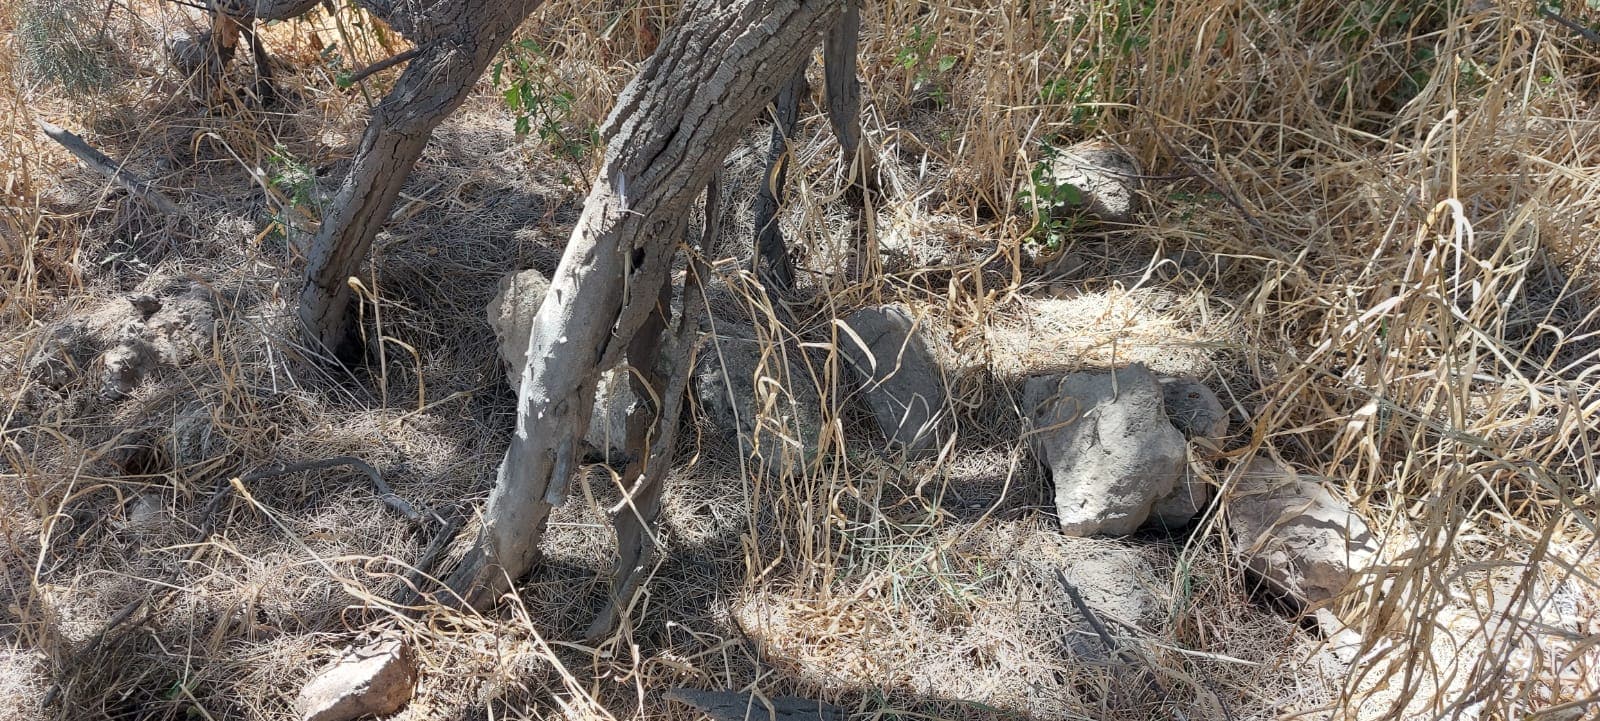 אבנים שעשויים להצביע על באר למרגלות עץ אשל, ליד תל-רוחמה. יוני 2022 (צילום: גן ארז)